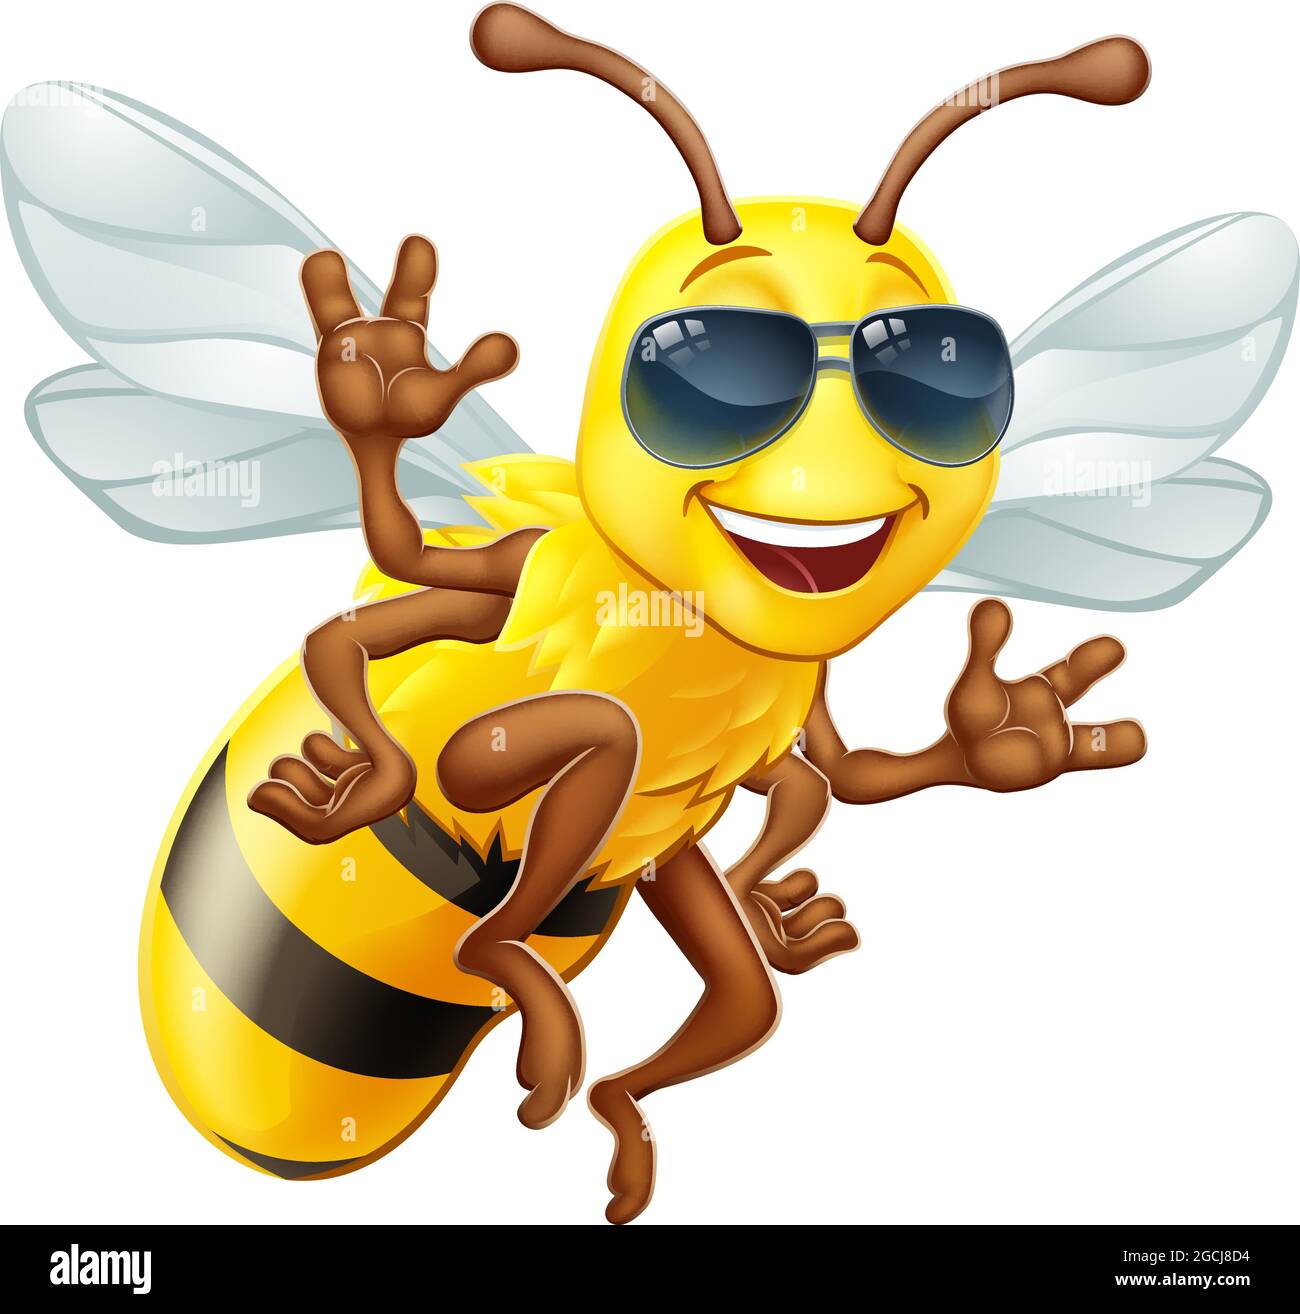 Cool Honey Bumble Bee dans les tons personnage de dessin animé Illustration de Vecteur